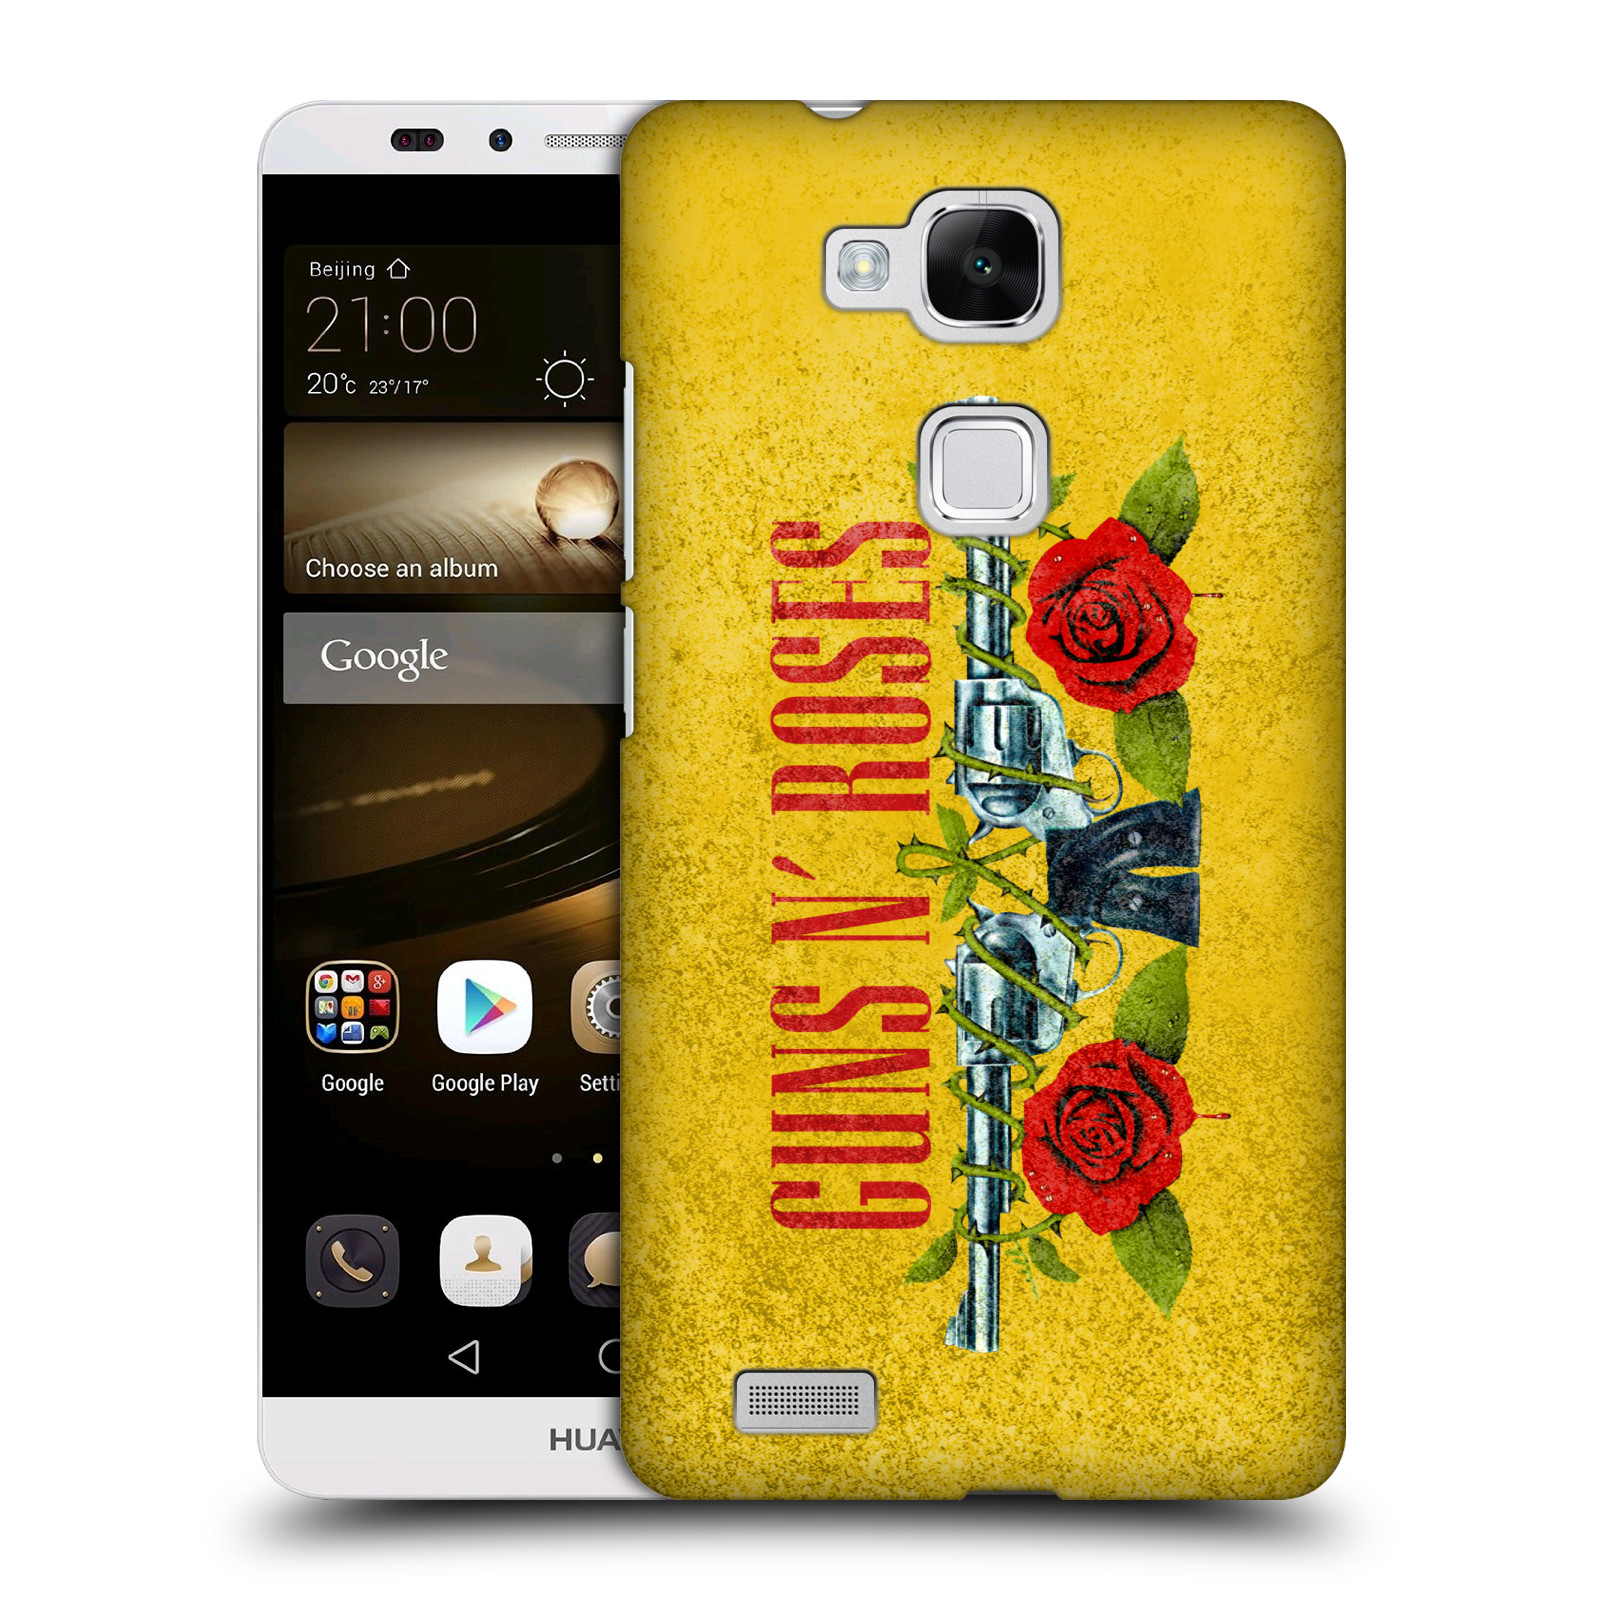 HEAD CASE plastový obal na mobil Huawei Mate 7 hudební skupina Guns N Roses pistole a růže žluté pozadí